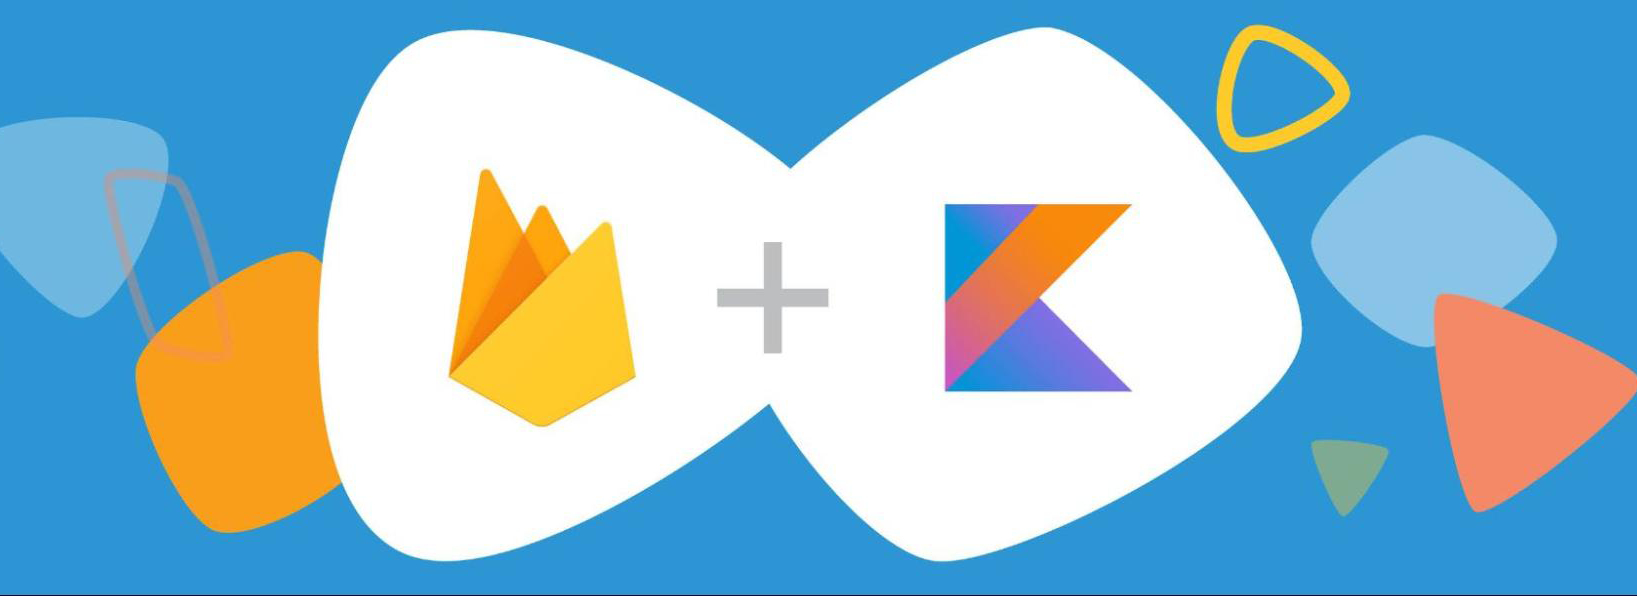 Logo Firebase et Kotlin